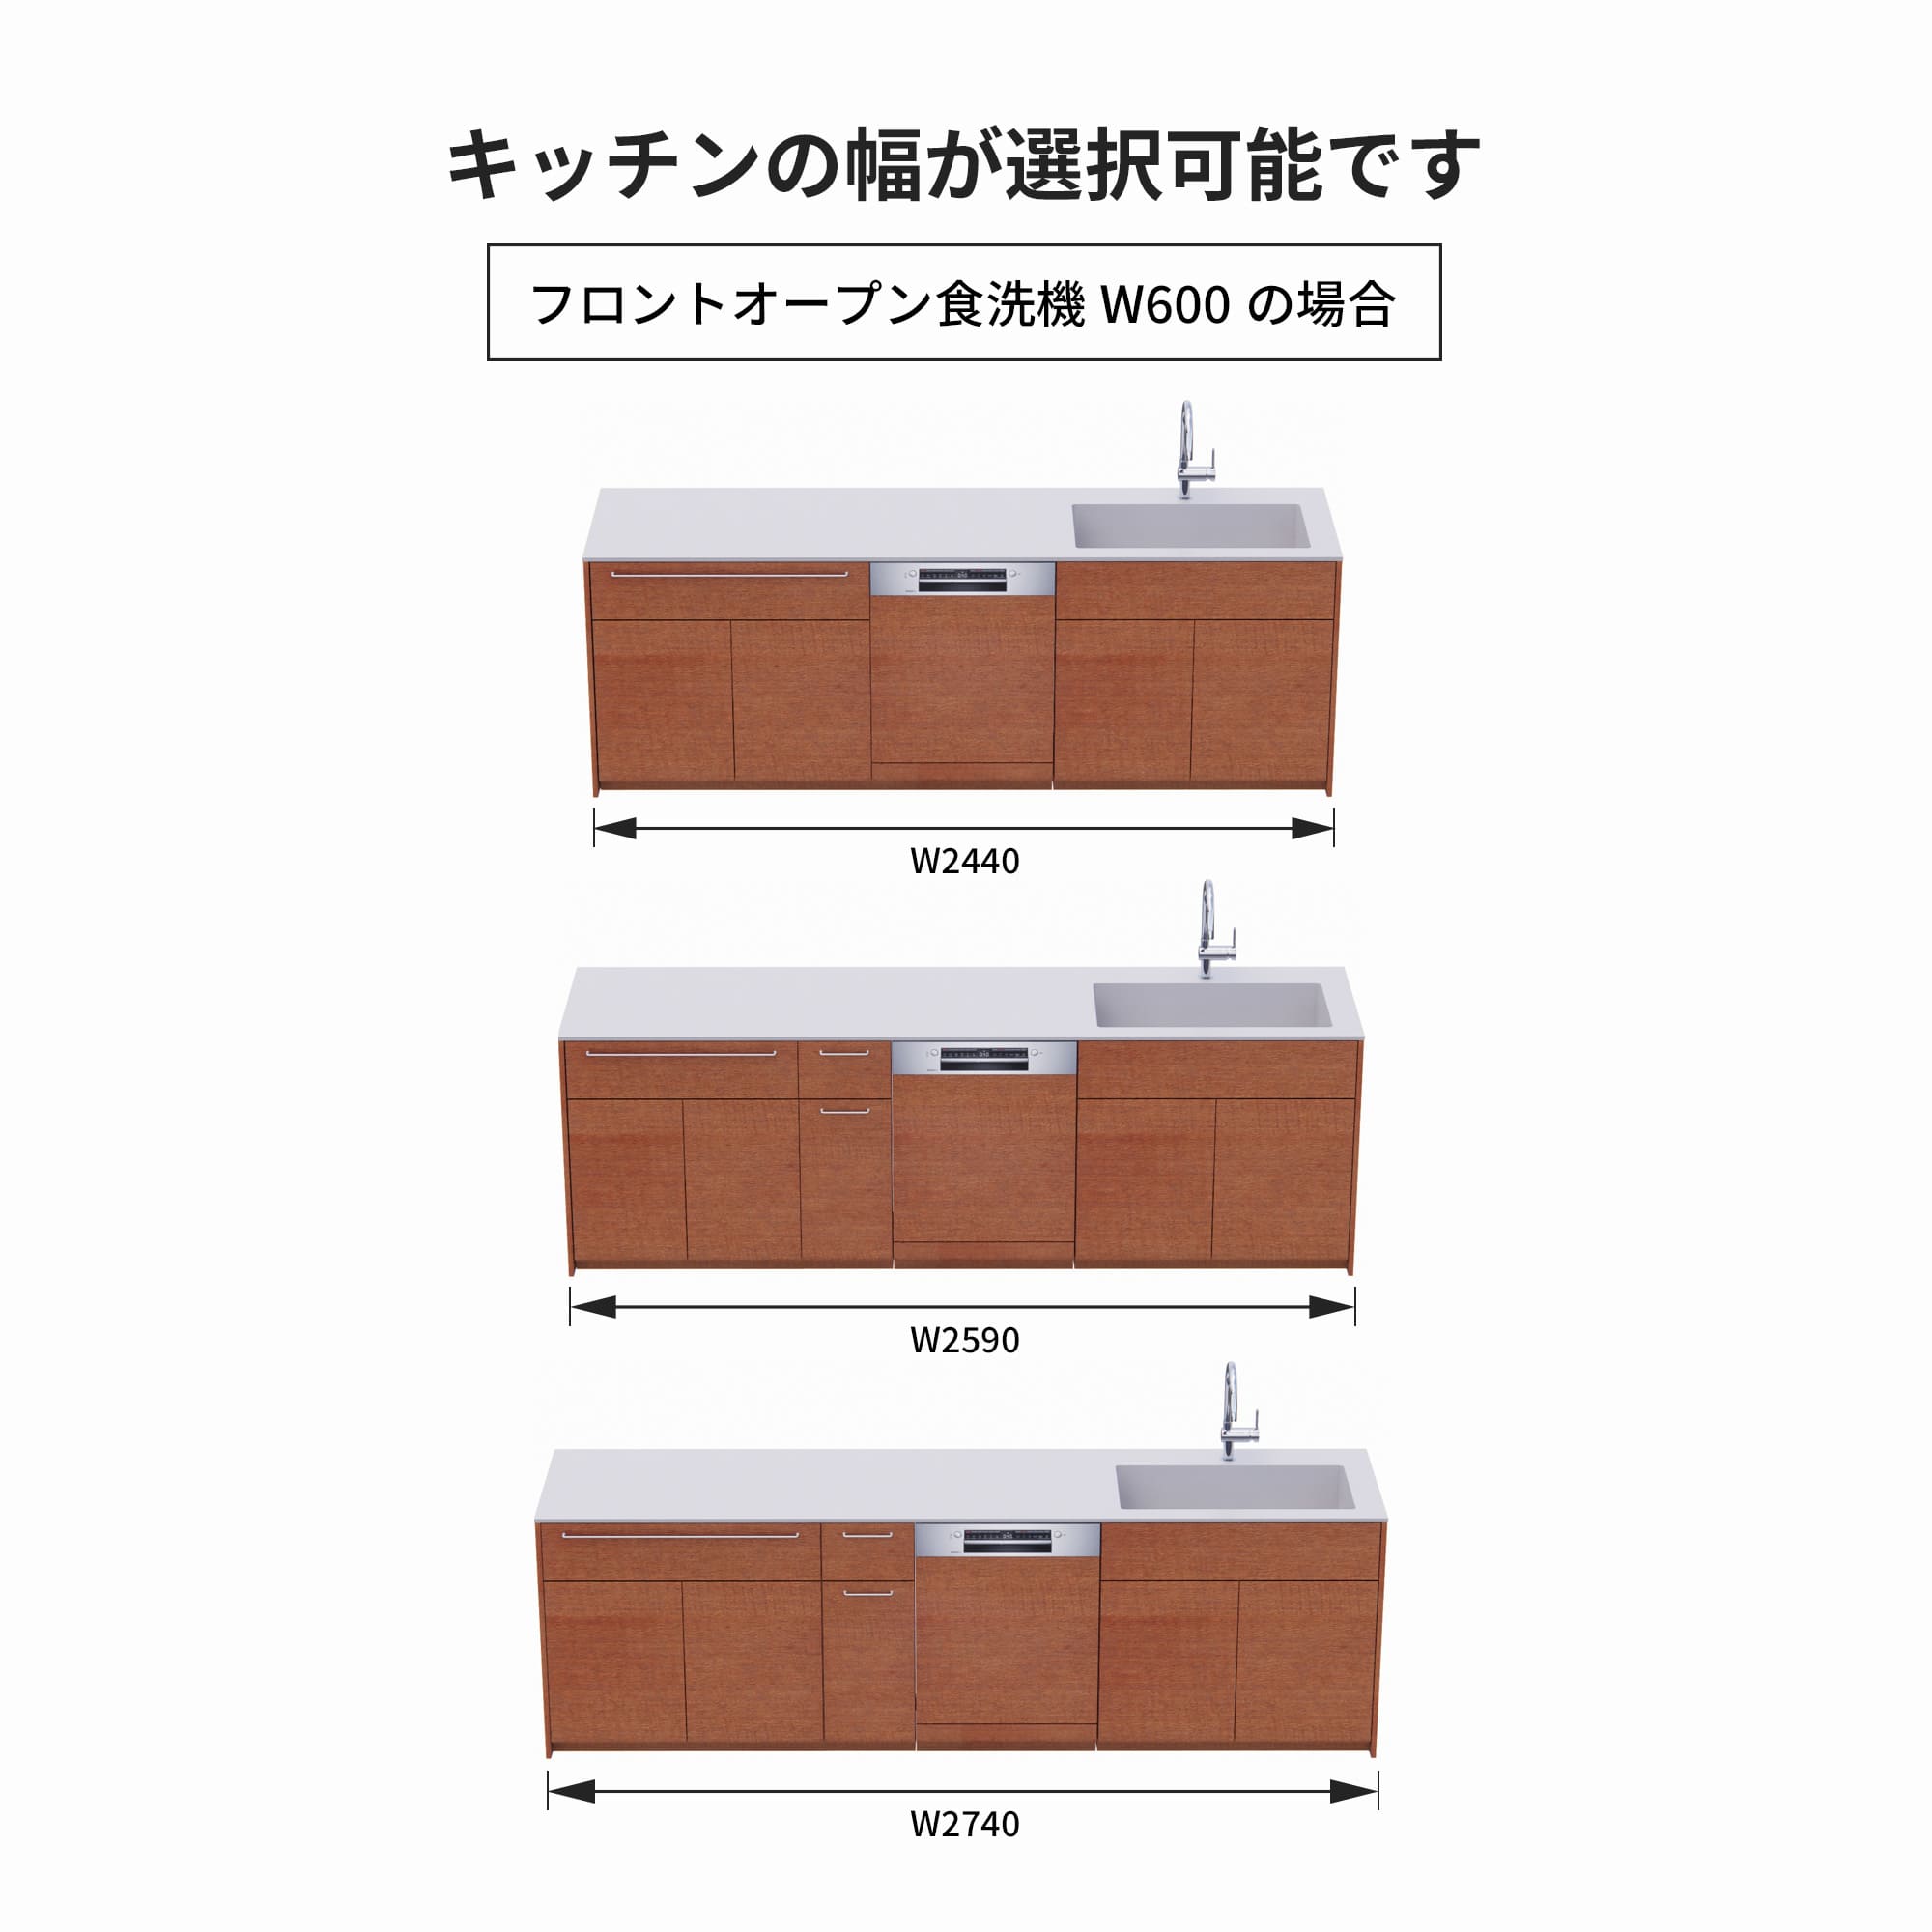 木製システムキッチン 壁付け型 W2440～2740・コンロなし / オーブンなし / 食洗機あり KB-KC022-27-G183 フロントオープン600の場合